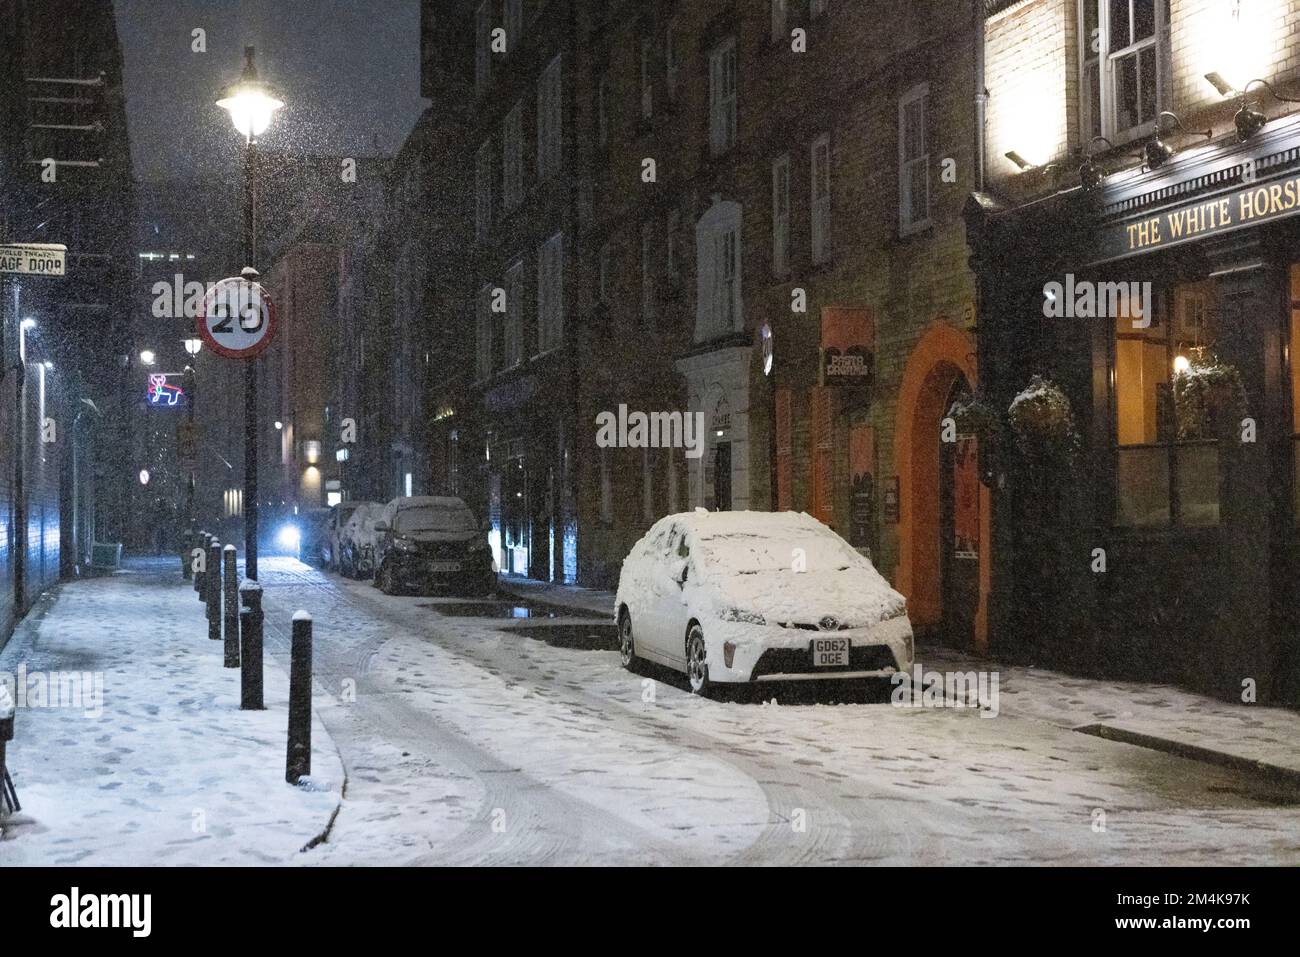 Questa sera la neve cade a Londra, come si vede nel centro di Londra. Immagine scattata il 1st dicembre 2022. © Belinda Jiao jiao.bilin@gmail.com 07598931257 http Foto Stock